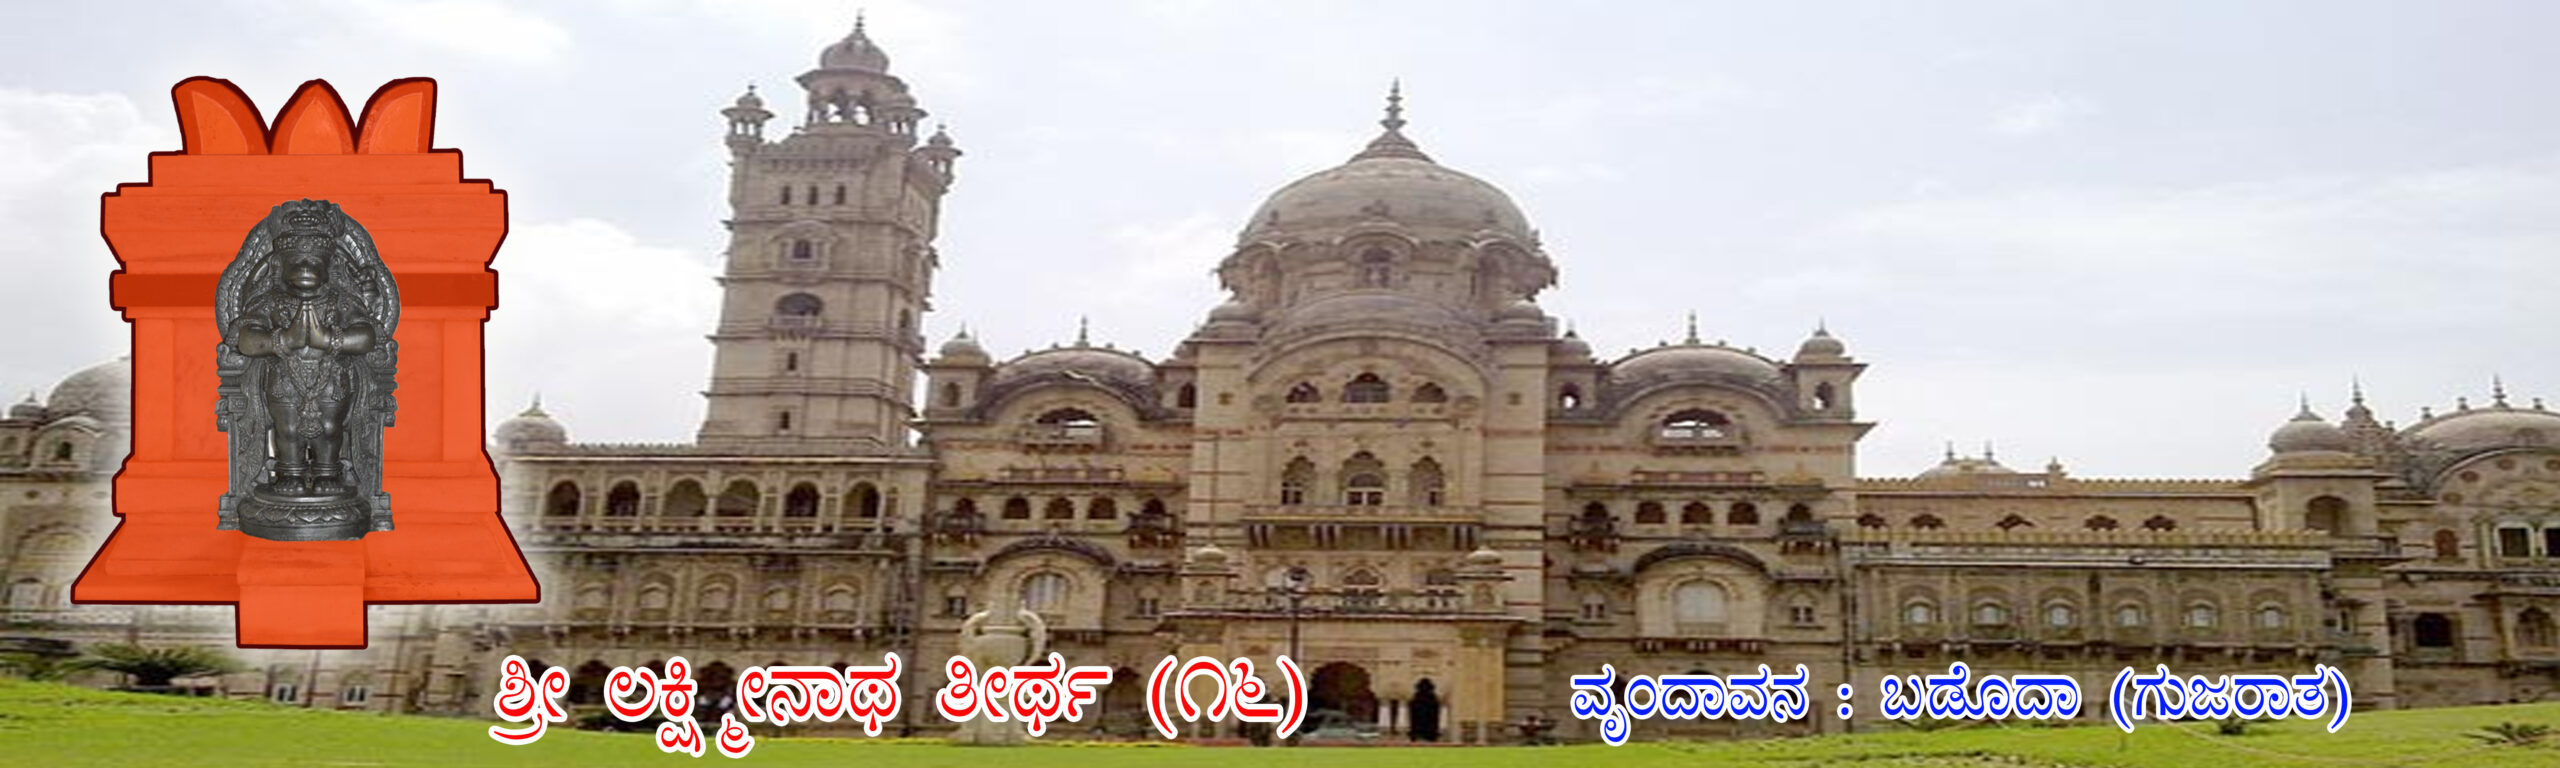 16 Laxminath Kannada